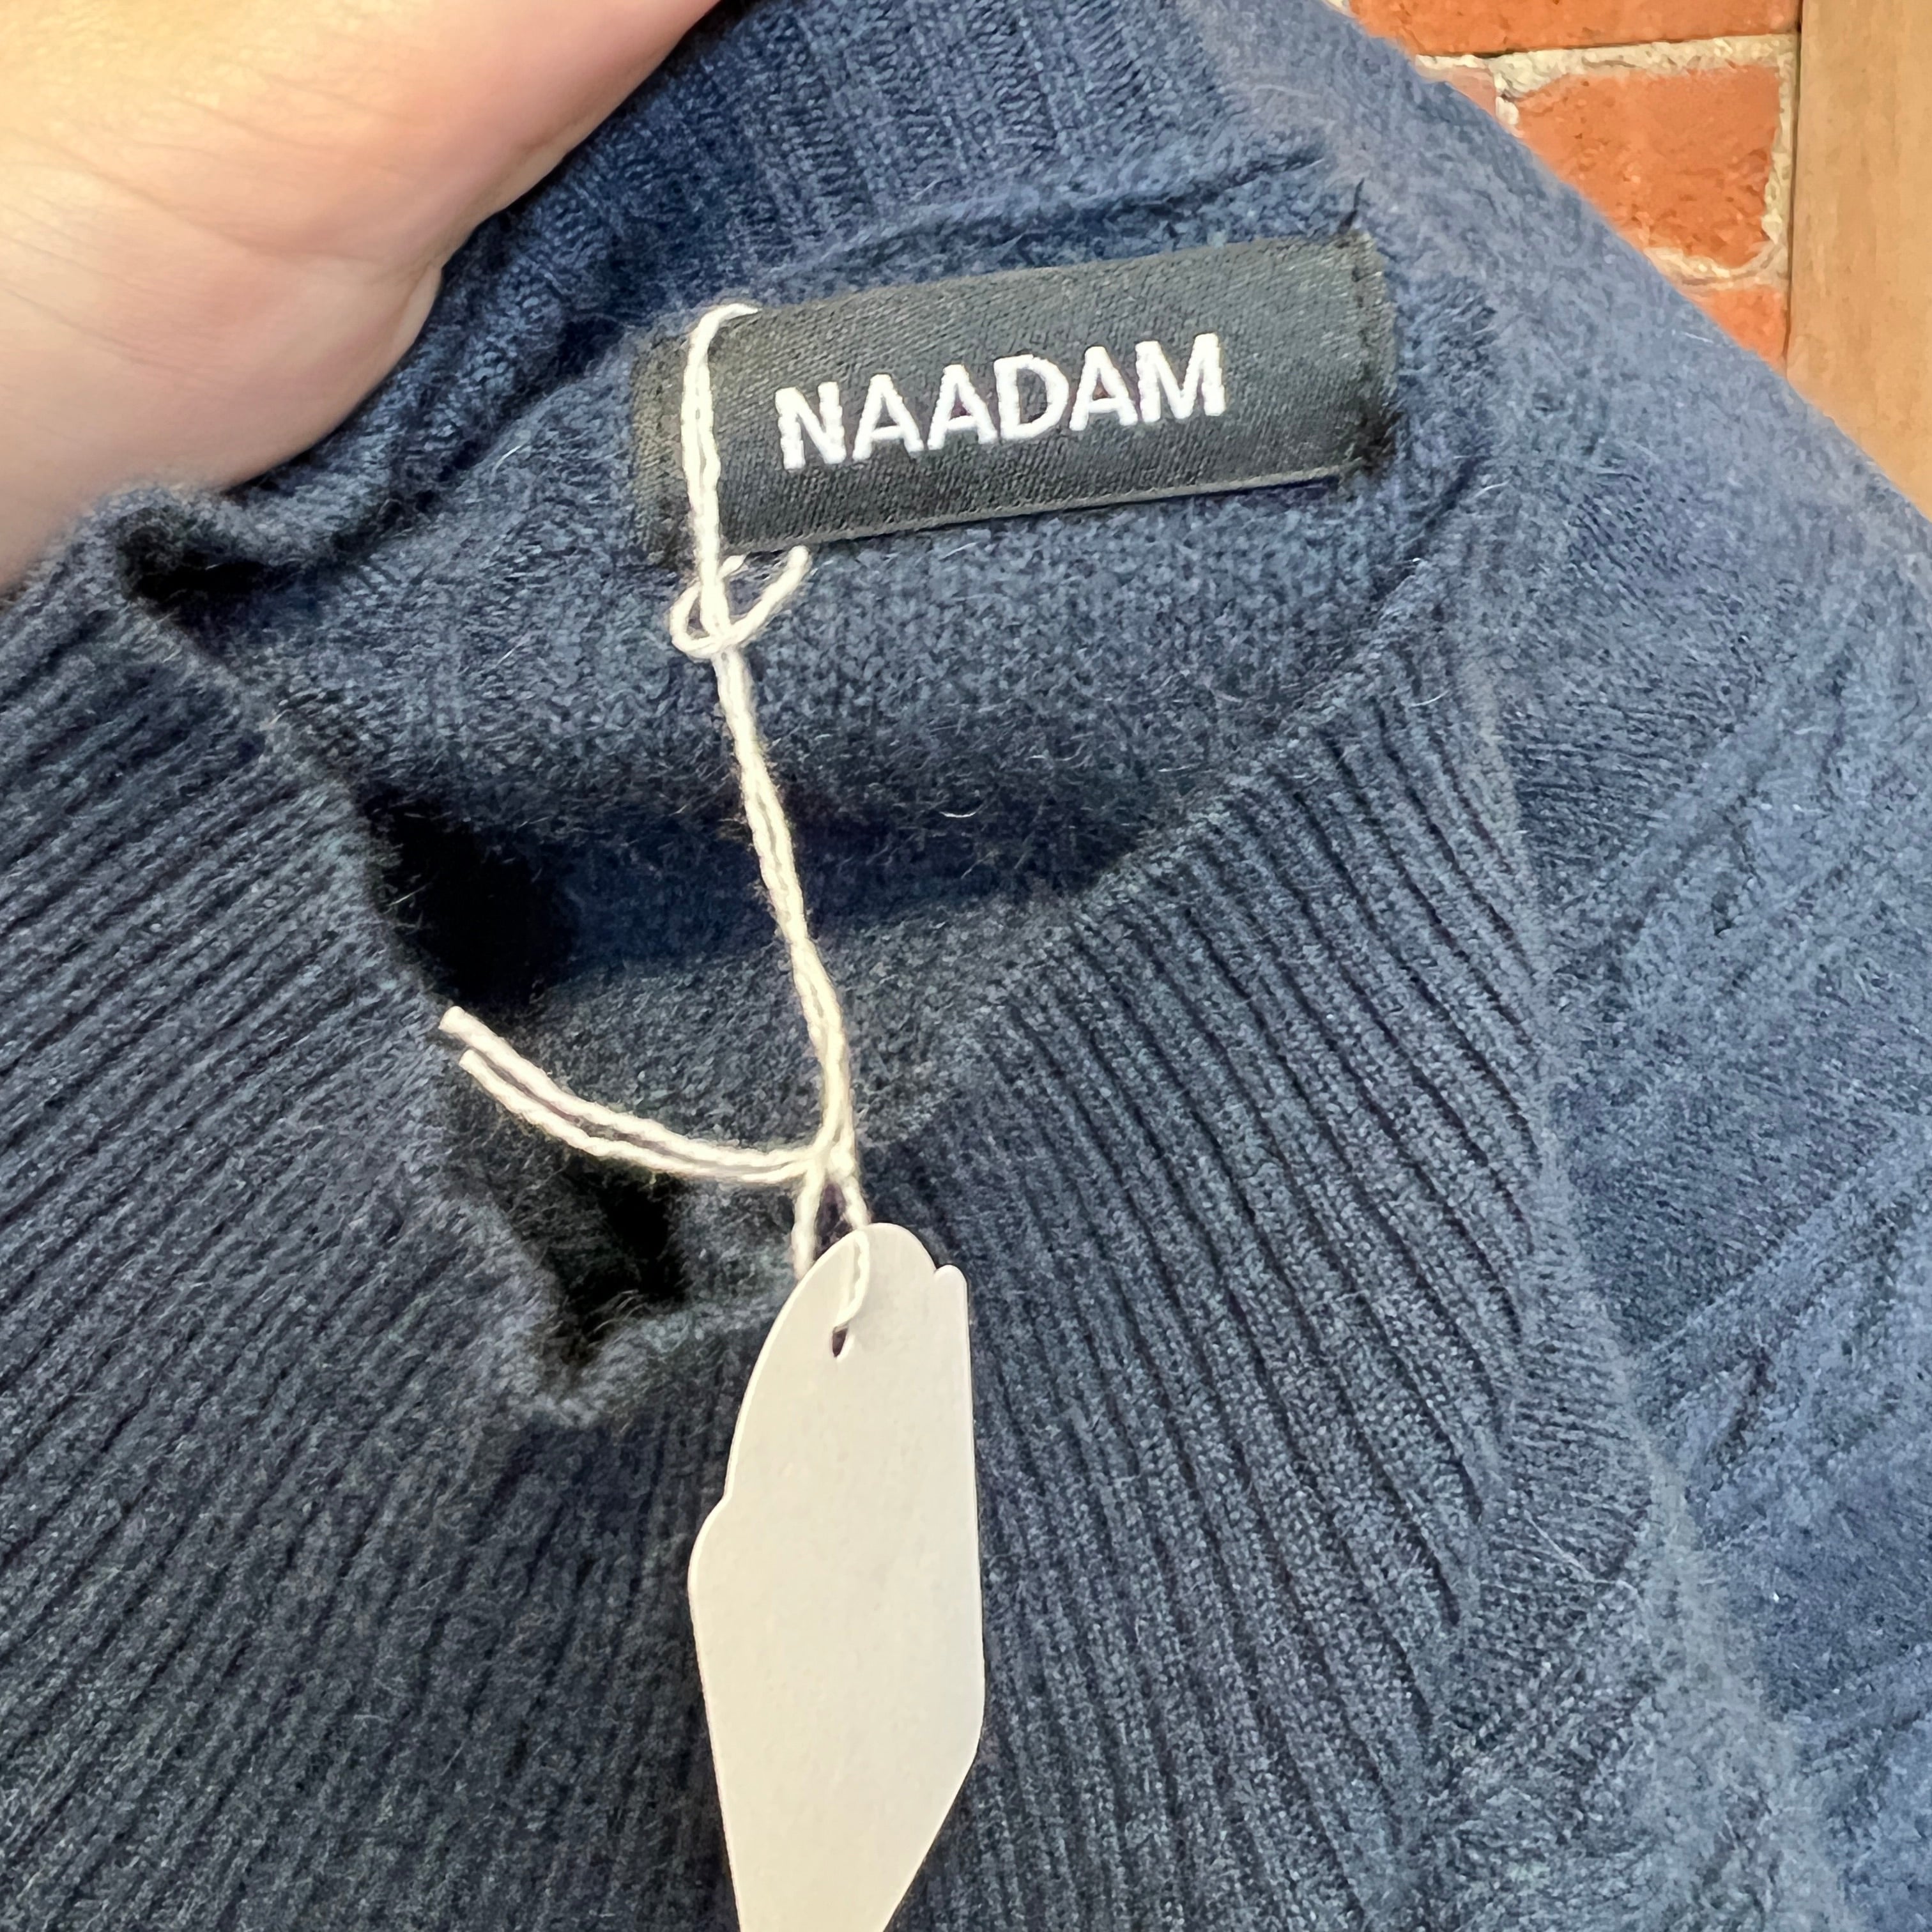 NADDAM 100% cashmere jumper